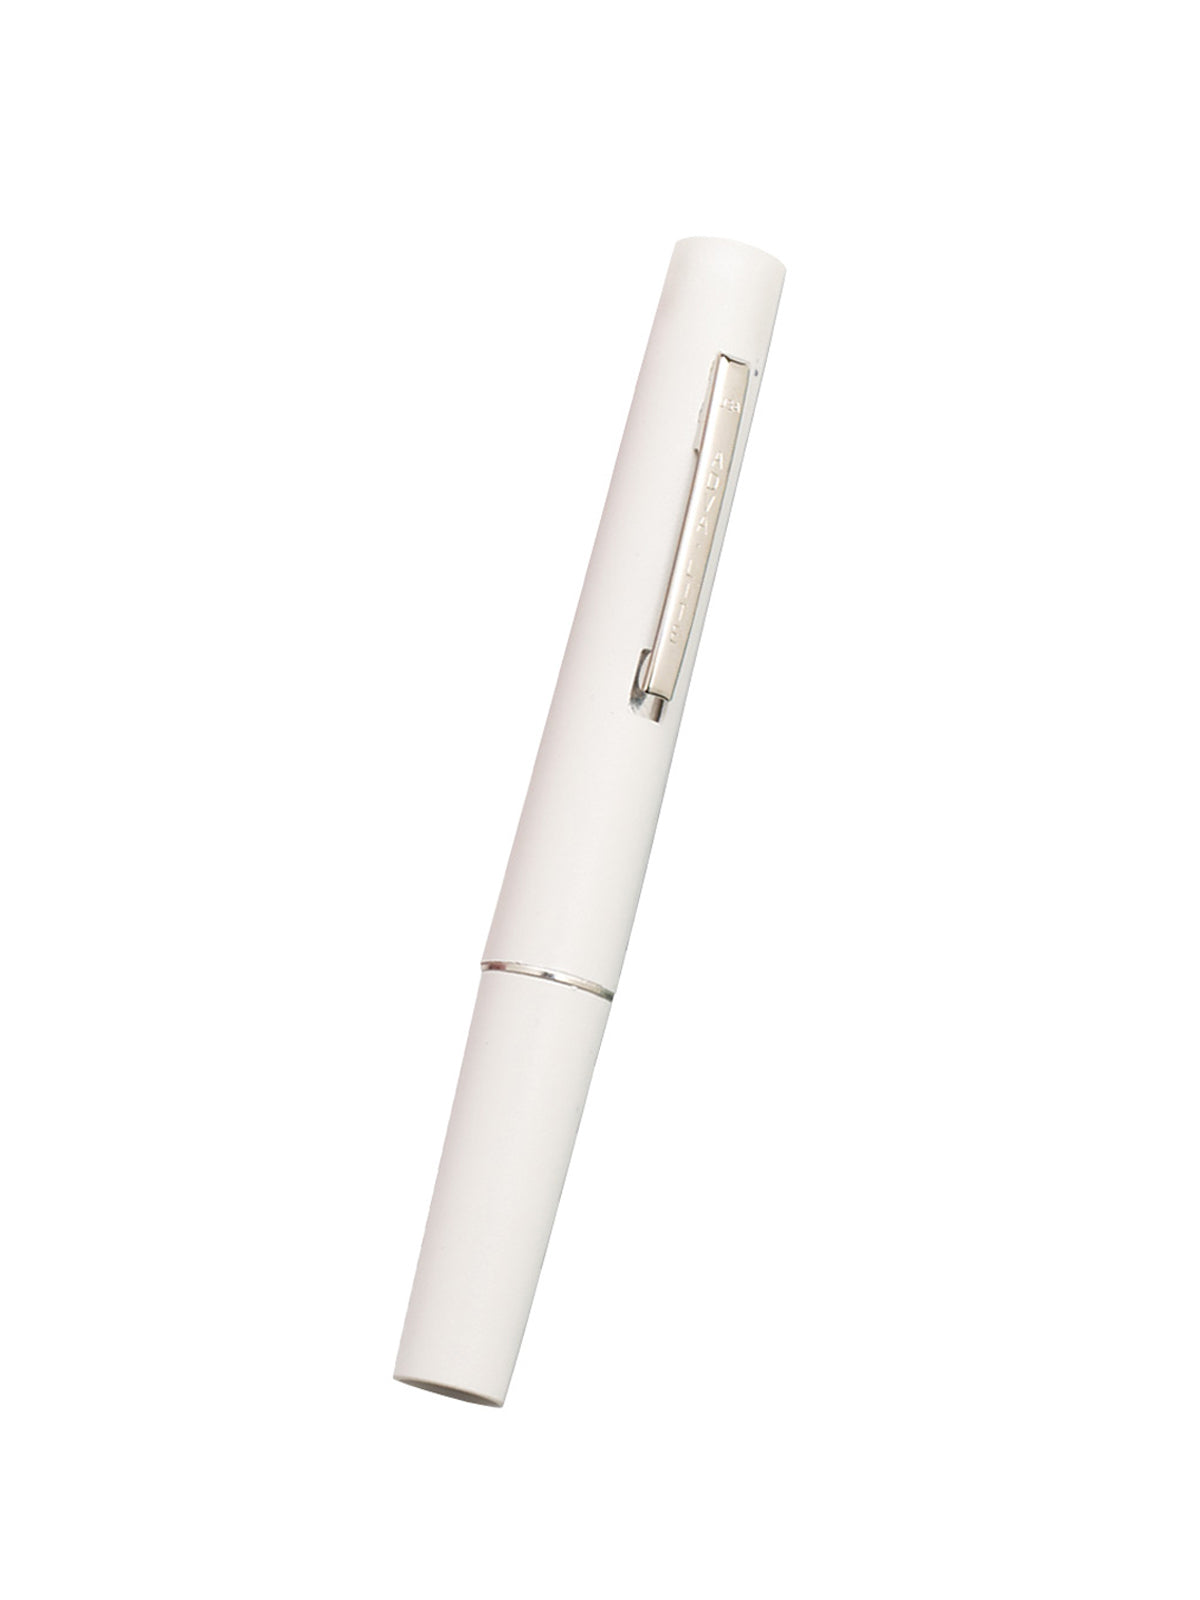 Standard Illumination Pen Light - 260 - White